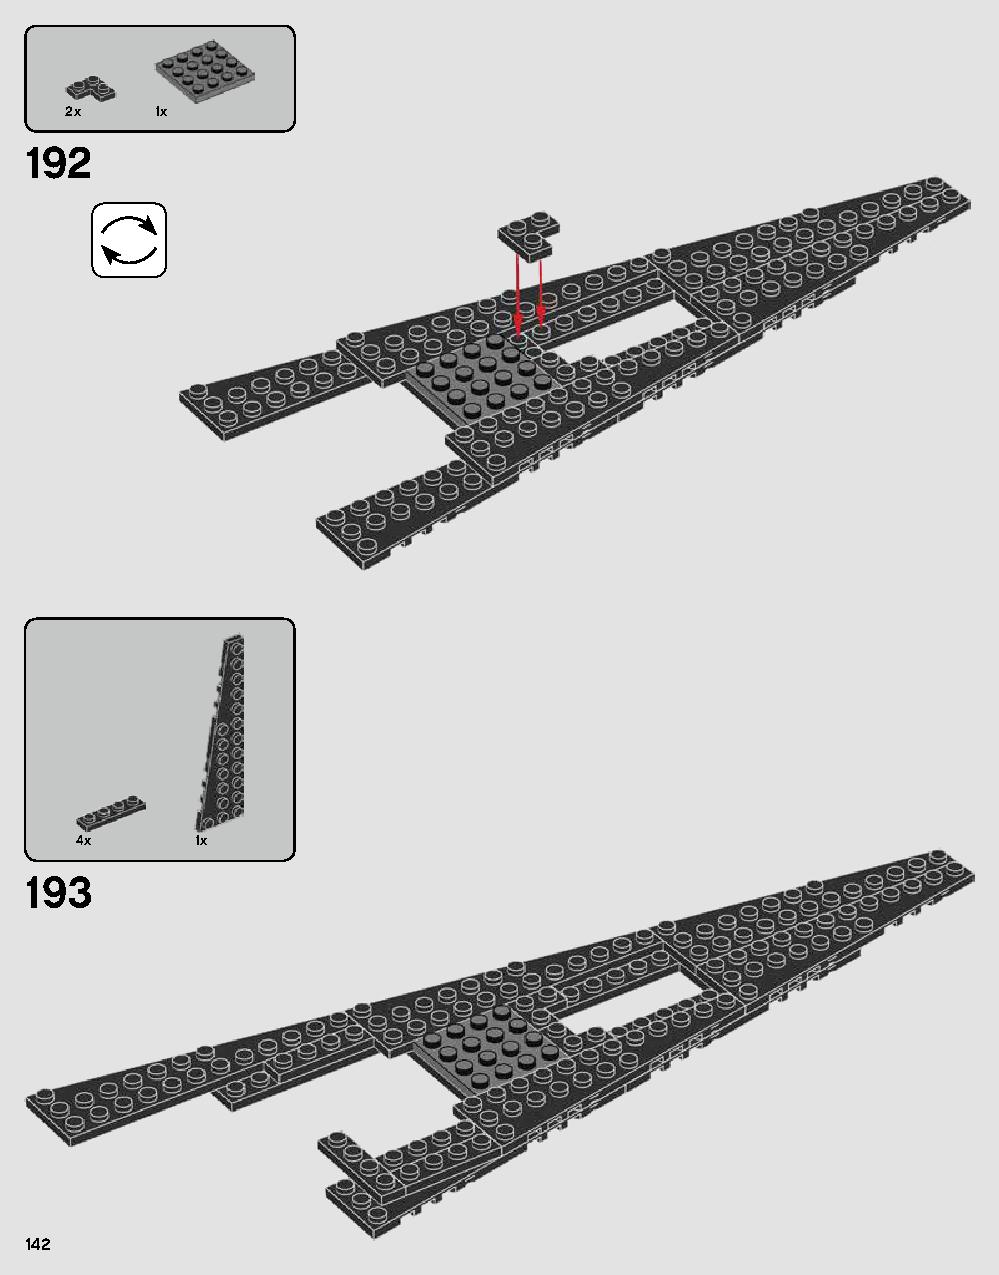 ダース・ベイダーの城 75251 レゴの商品情報 レゴの説明書・組立方法 142 page